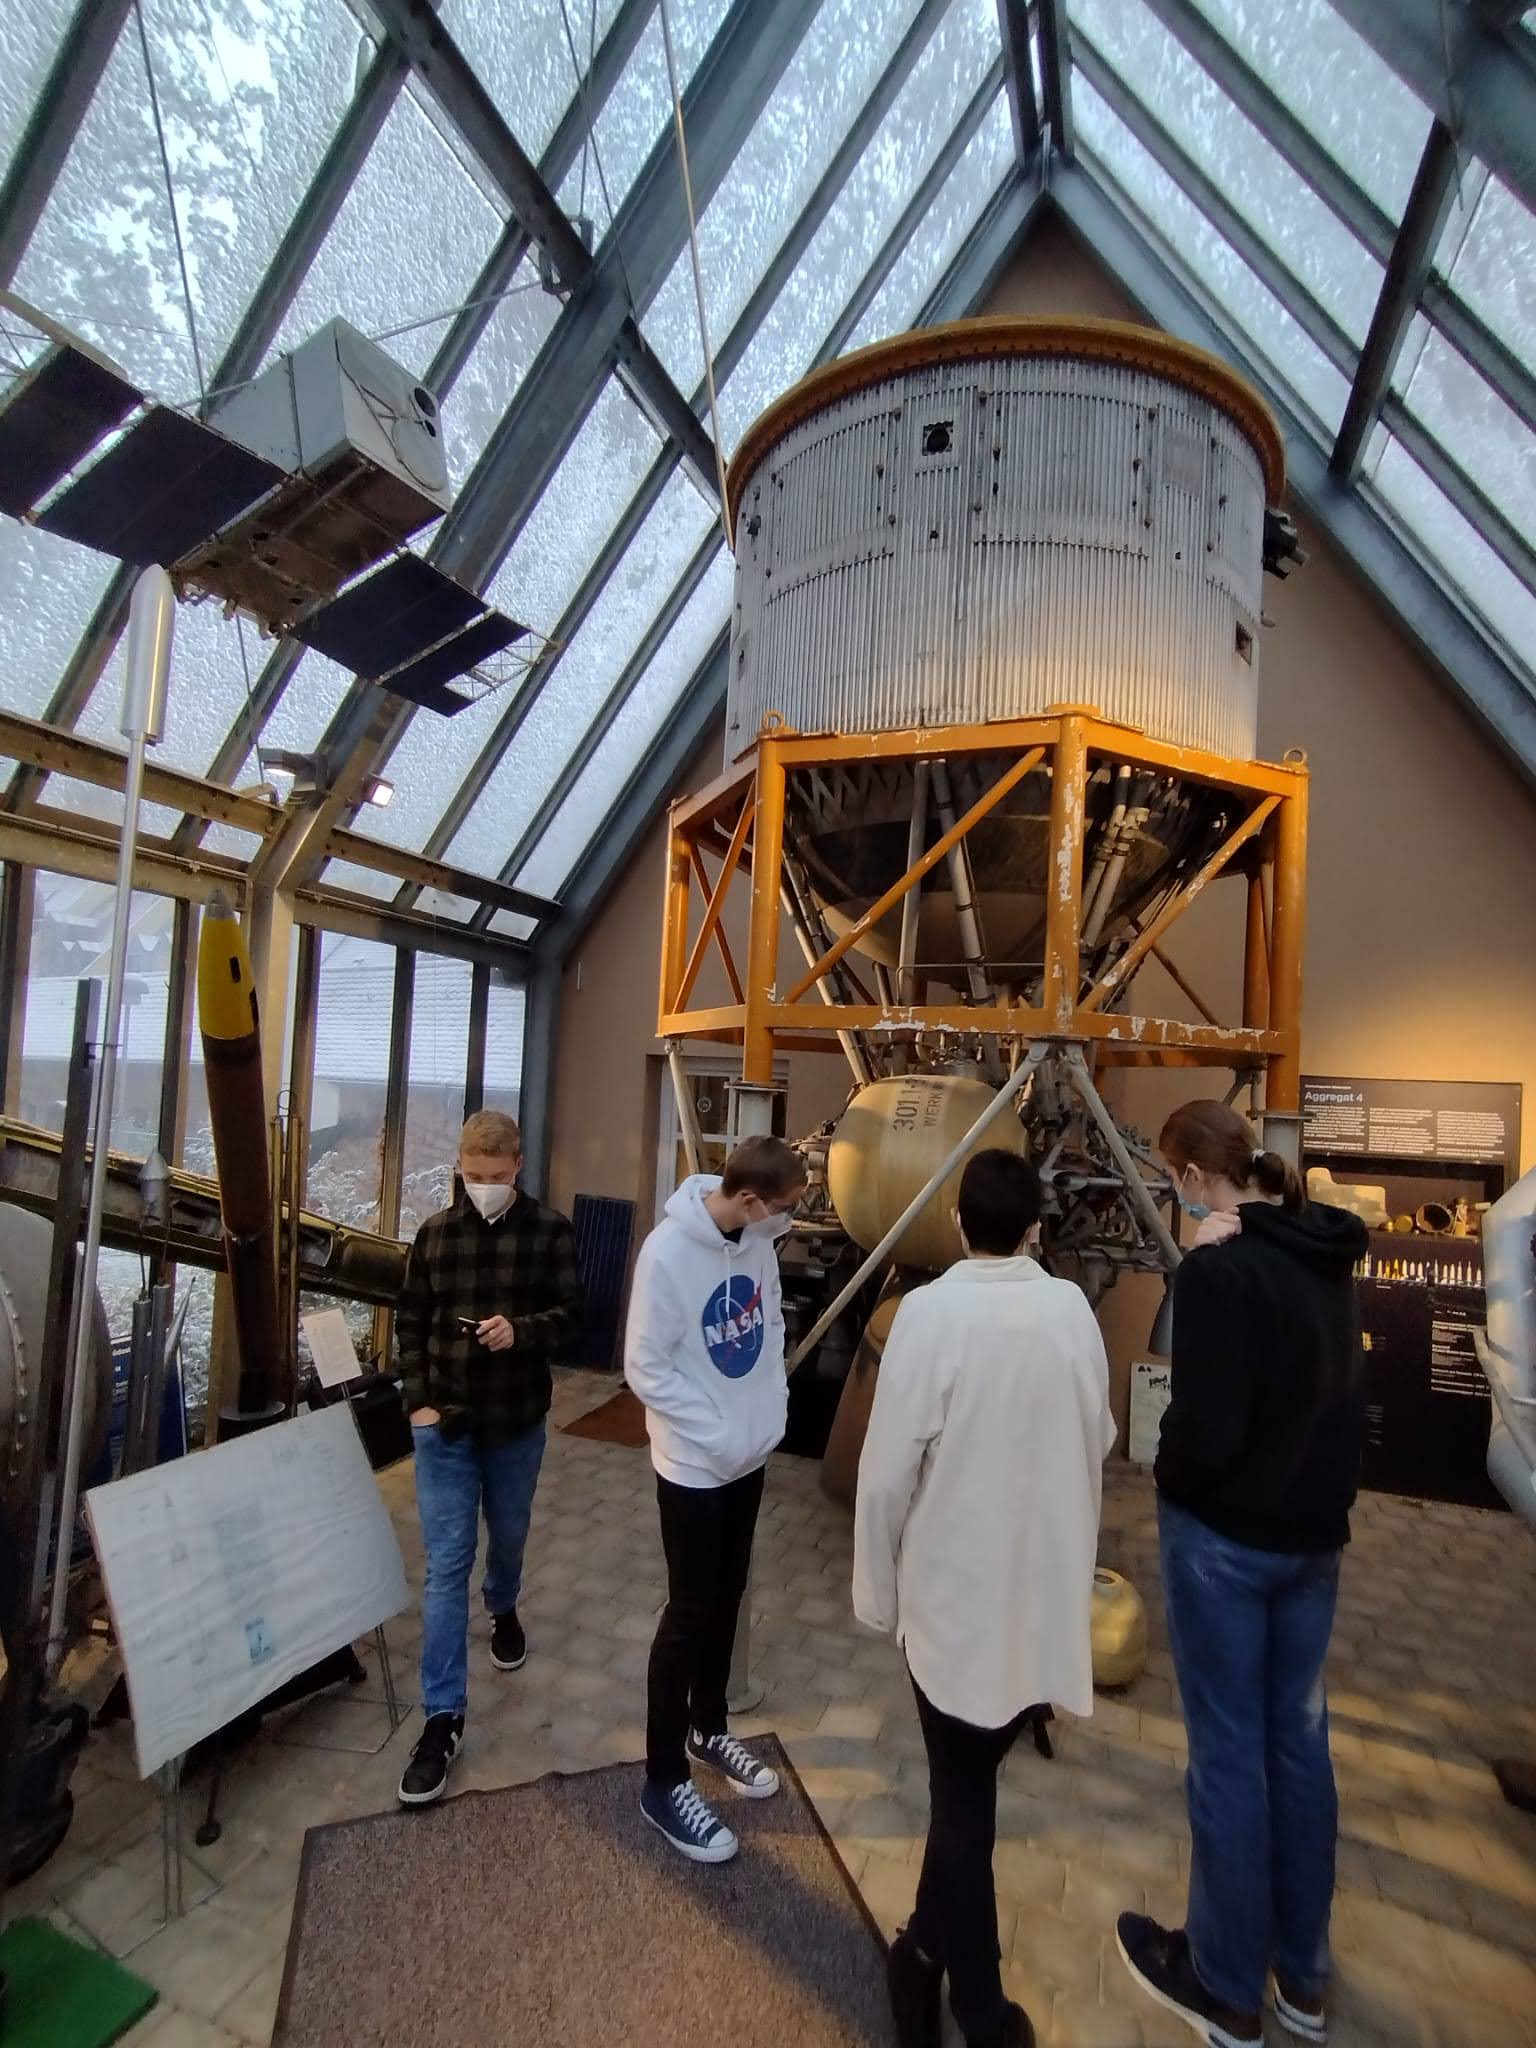 Raumfahrtmuseum